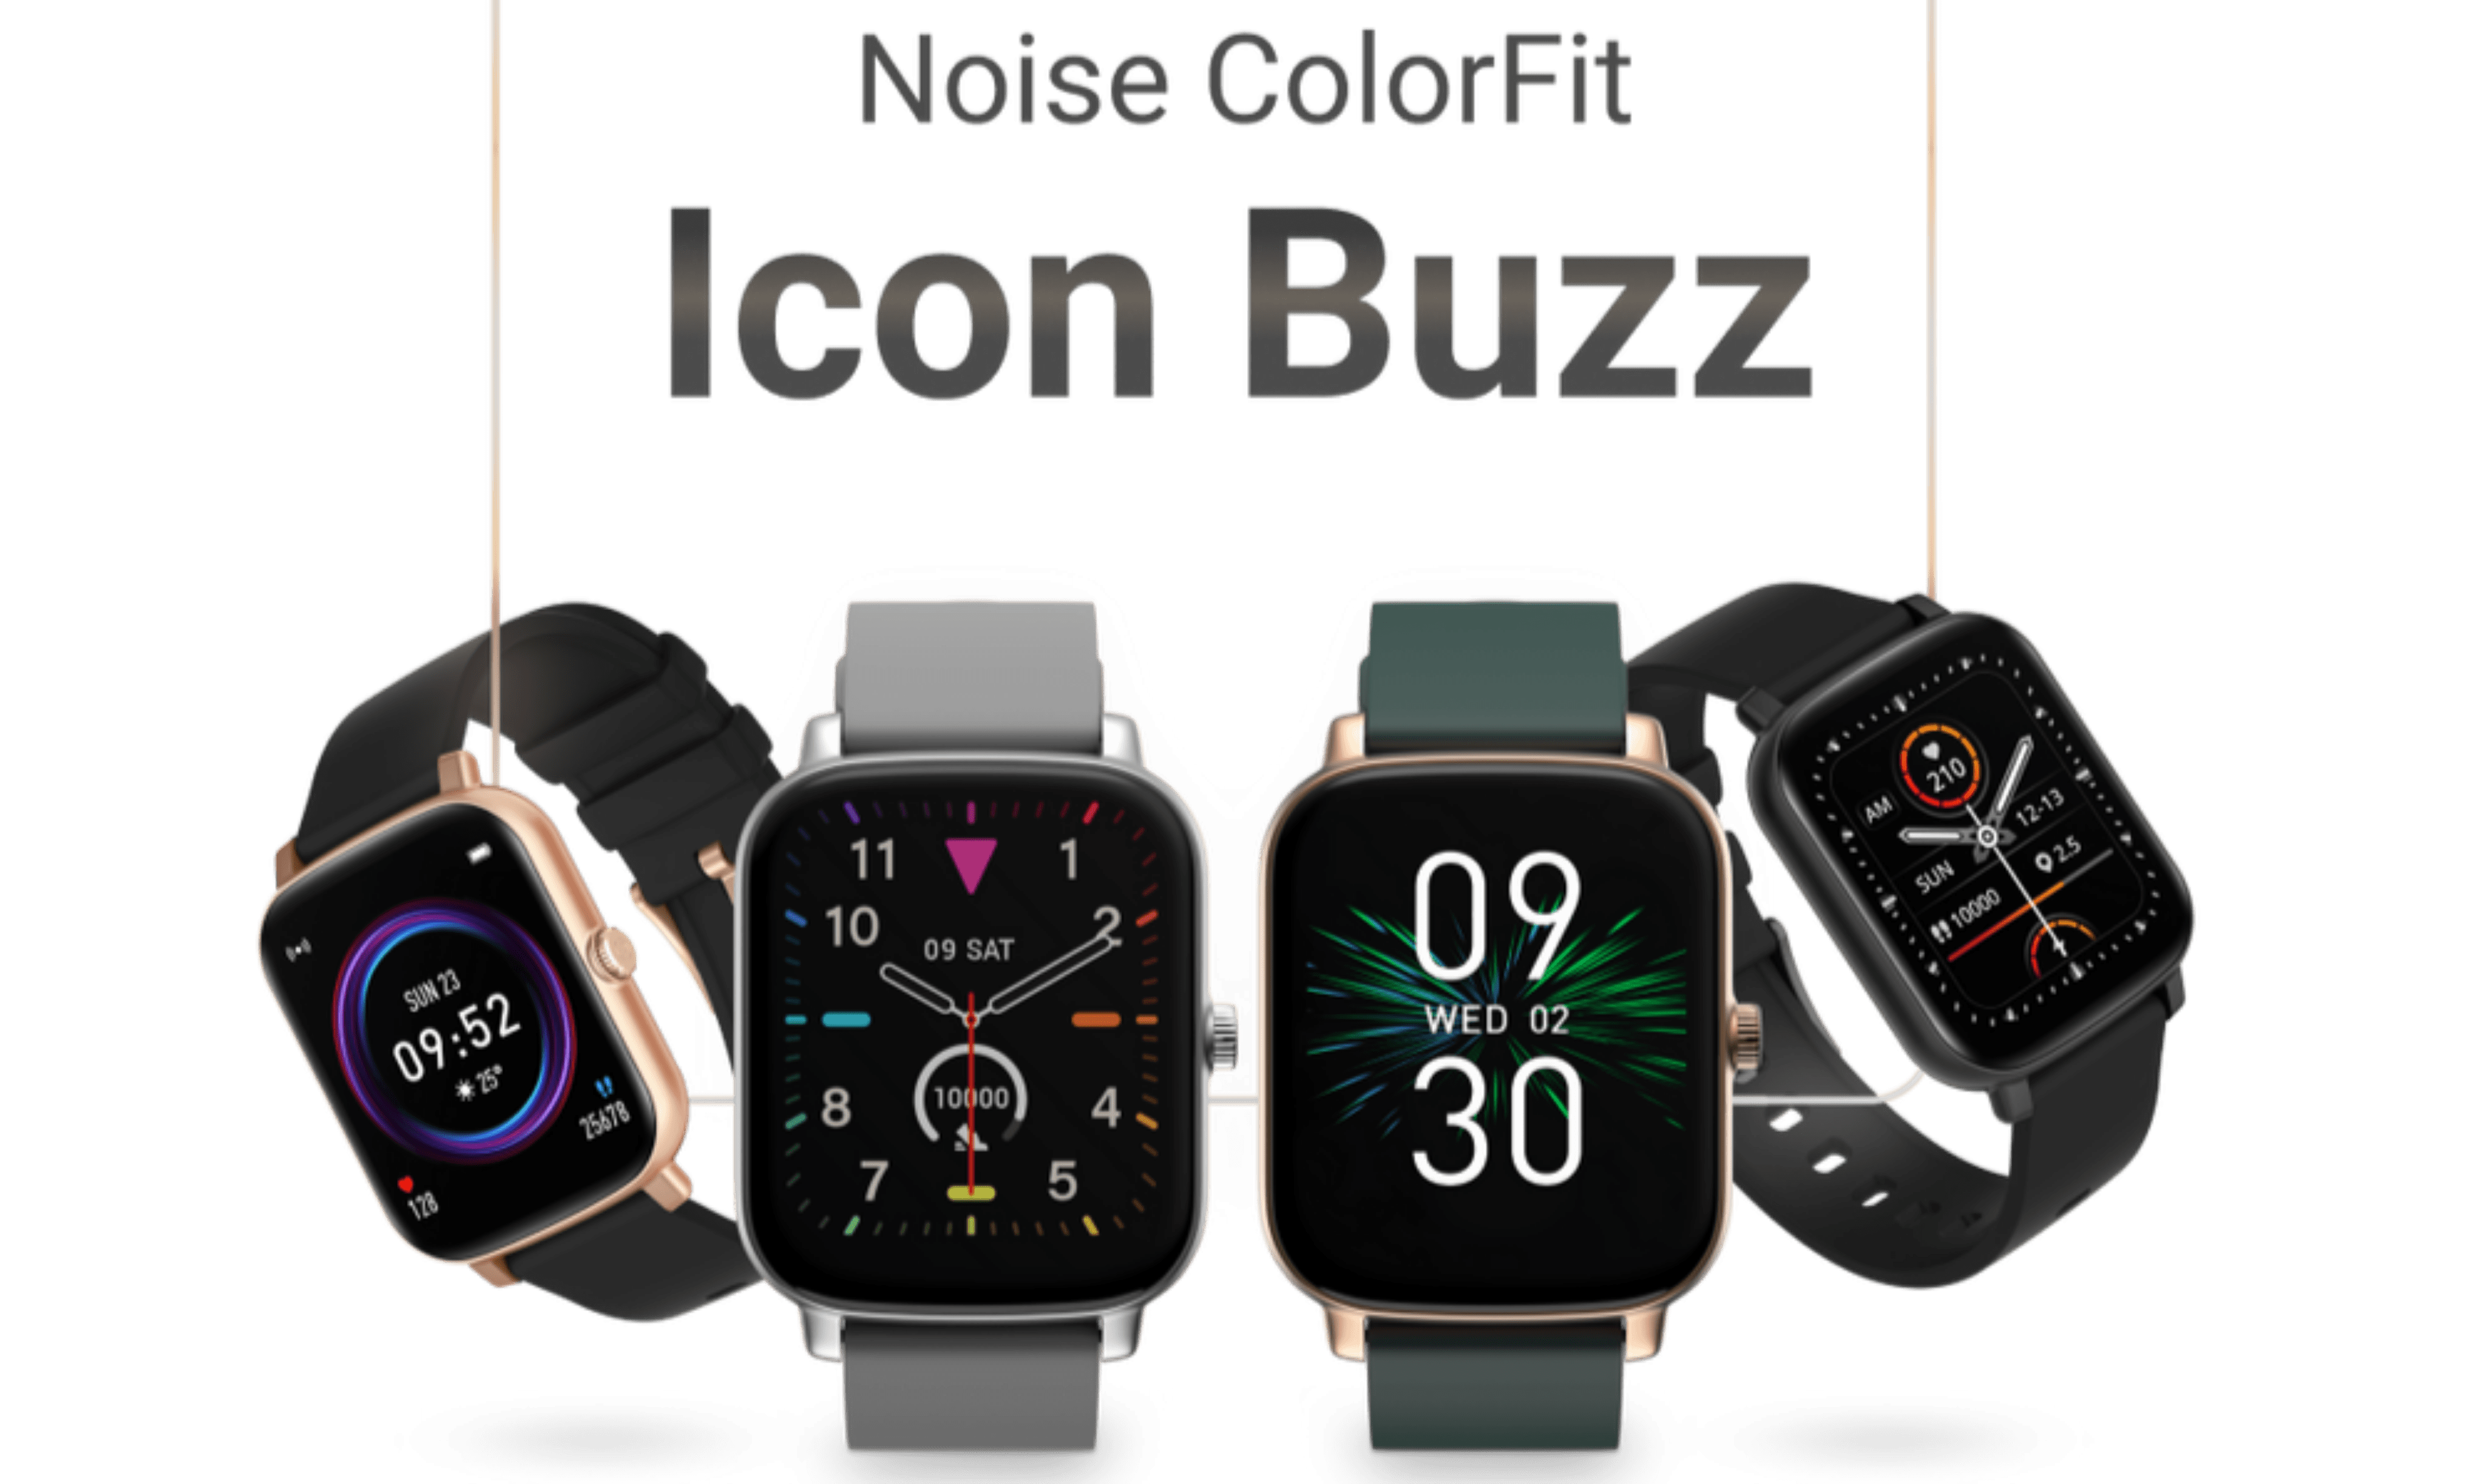 Noise ColorFit Icon Buzz